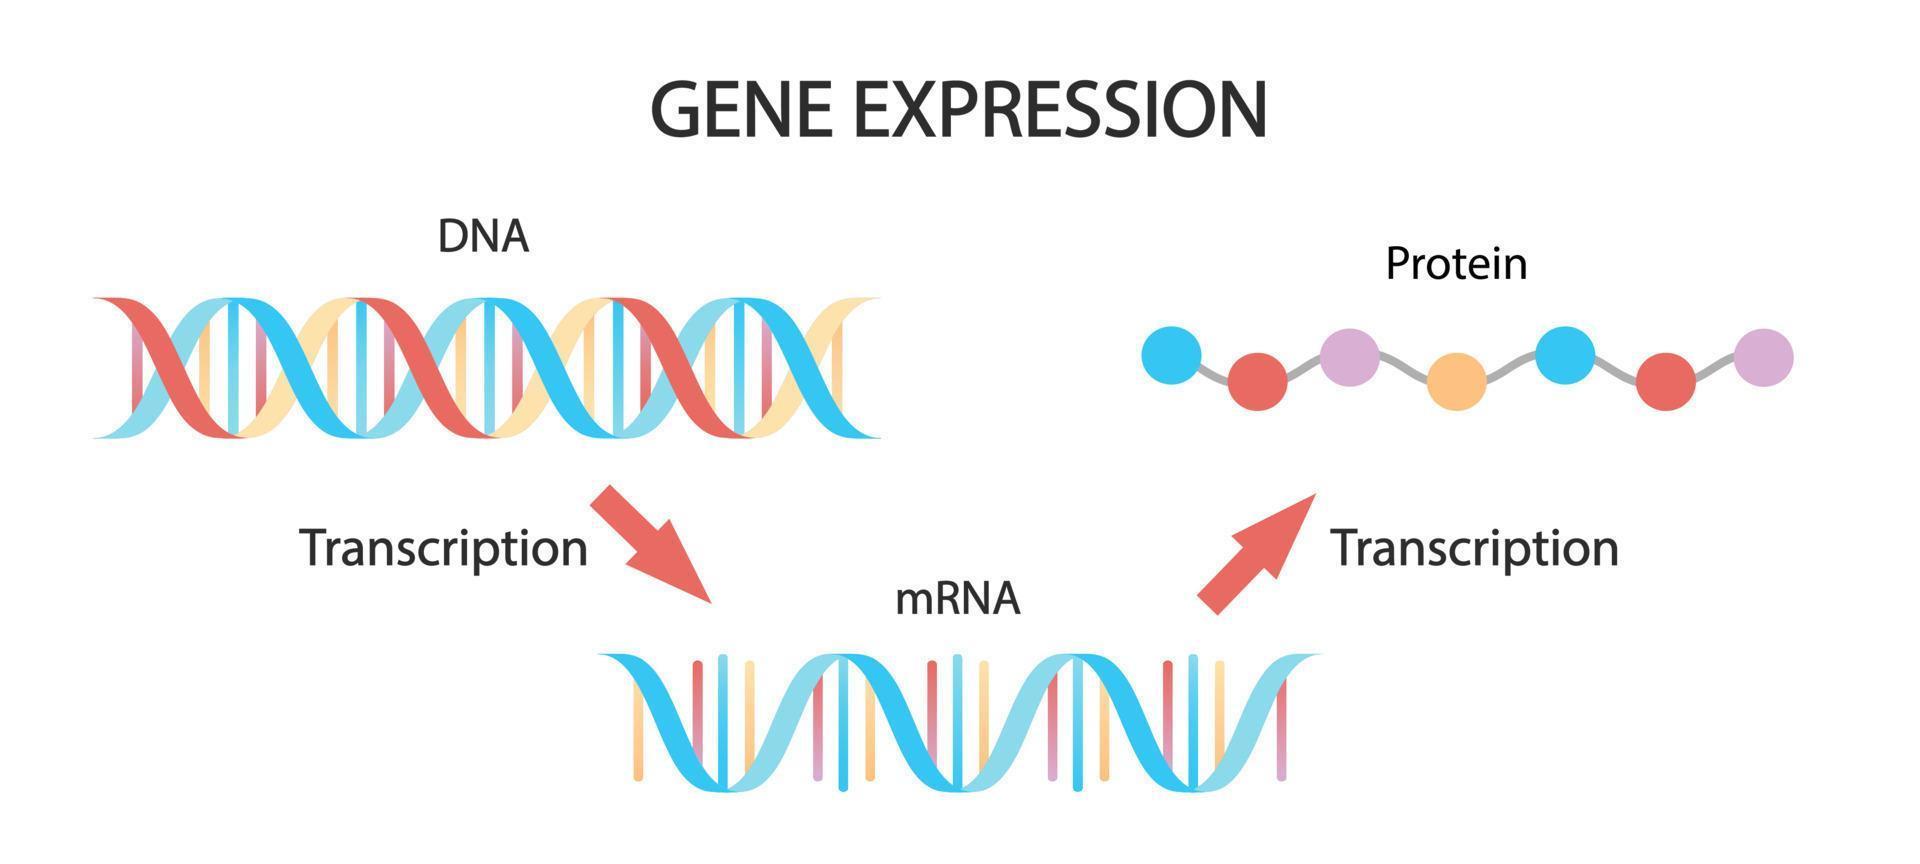 DNA-replikation, rna, mrna, proteinsyntes, translation. DNA:s biologiska funktioner. medicinsk illustration. vektor